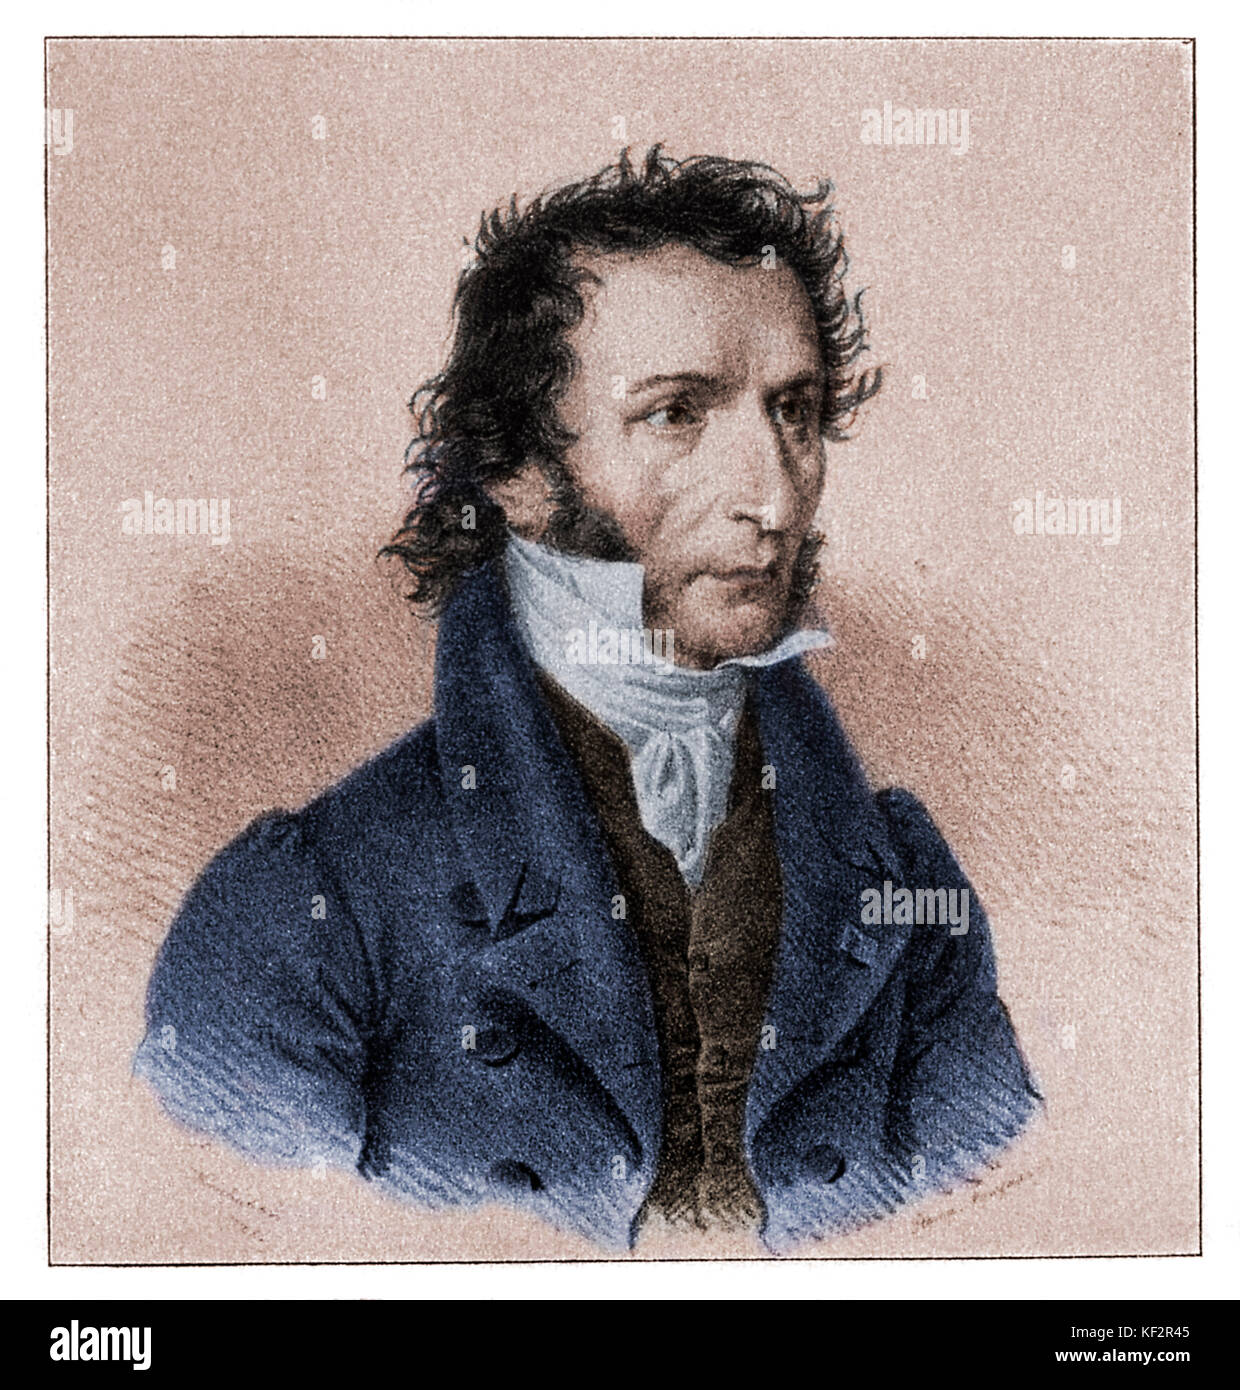 PAGANINI, N. - después de litografía por Kriehuber violinista y compositor italiano (1782-1840). Versión colourised Foto de stock